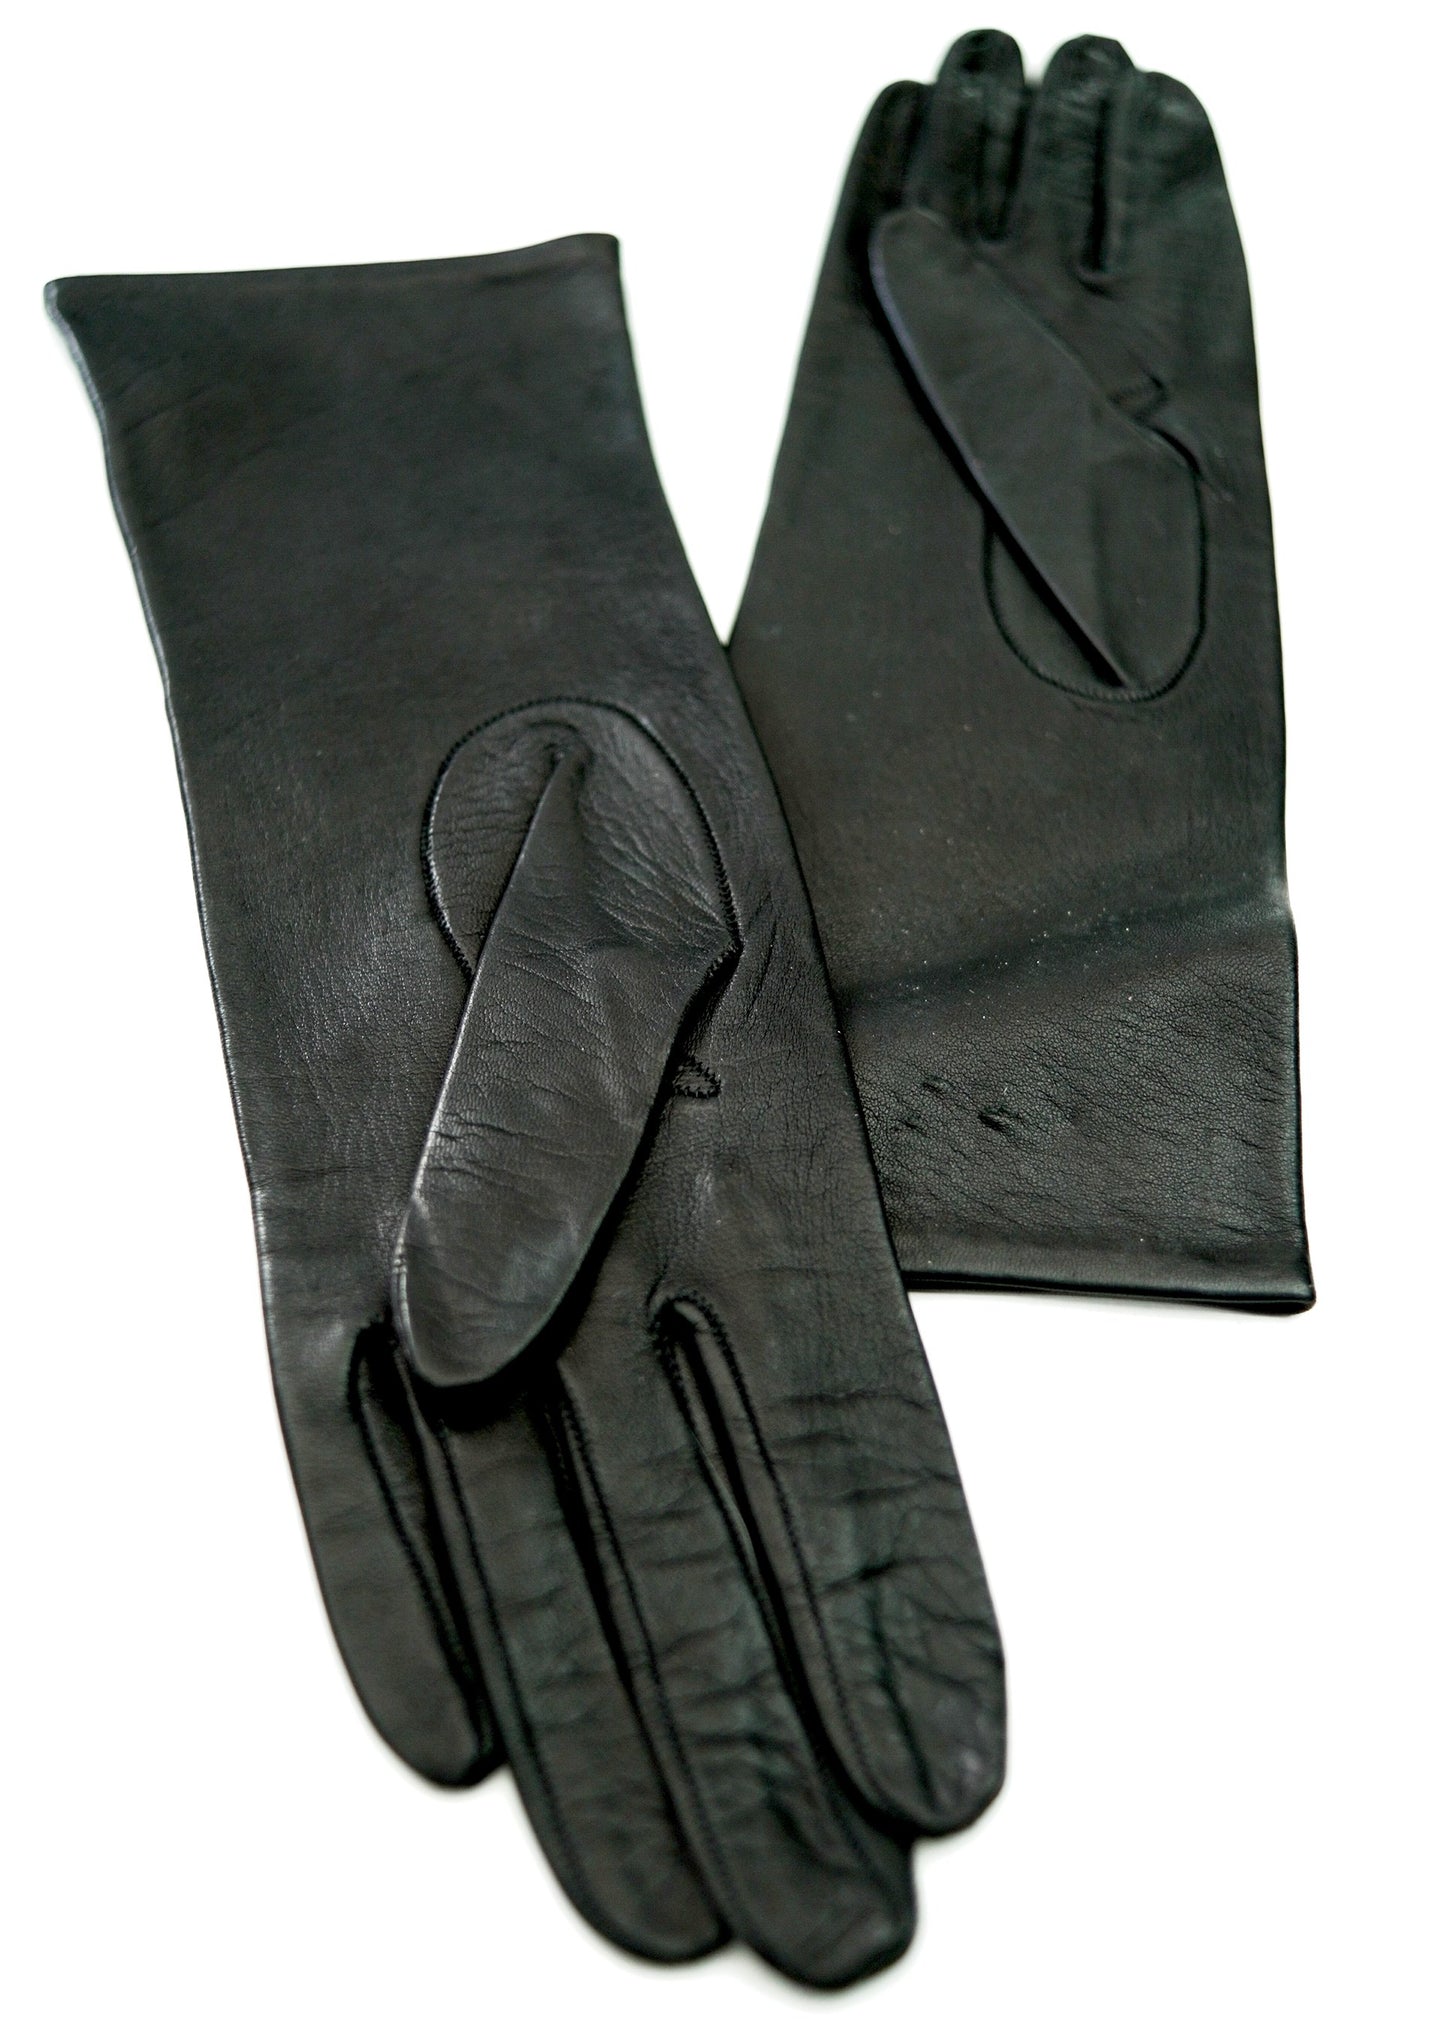 Vintage Black Kid Leather Gauntlet Gloves